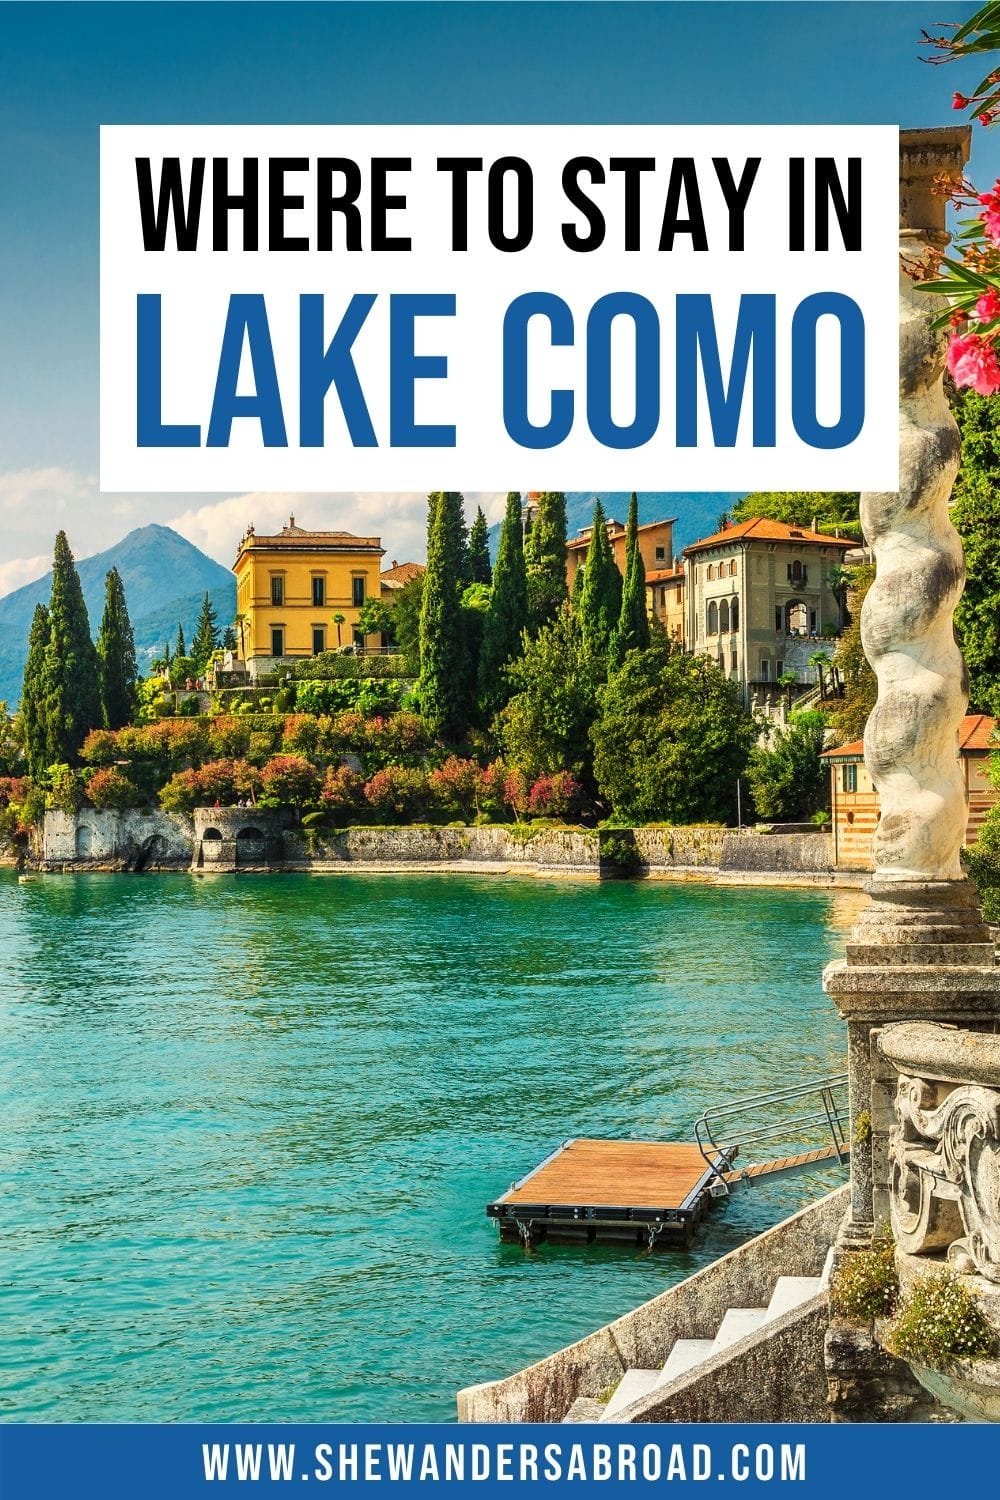 a legjobb szálláshelyek Lake Como területén: a legjobb városok szállodái